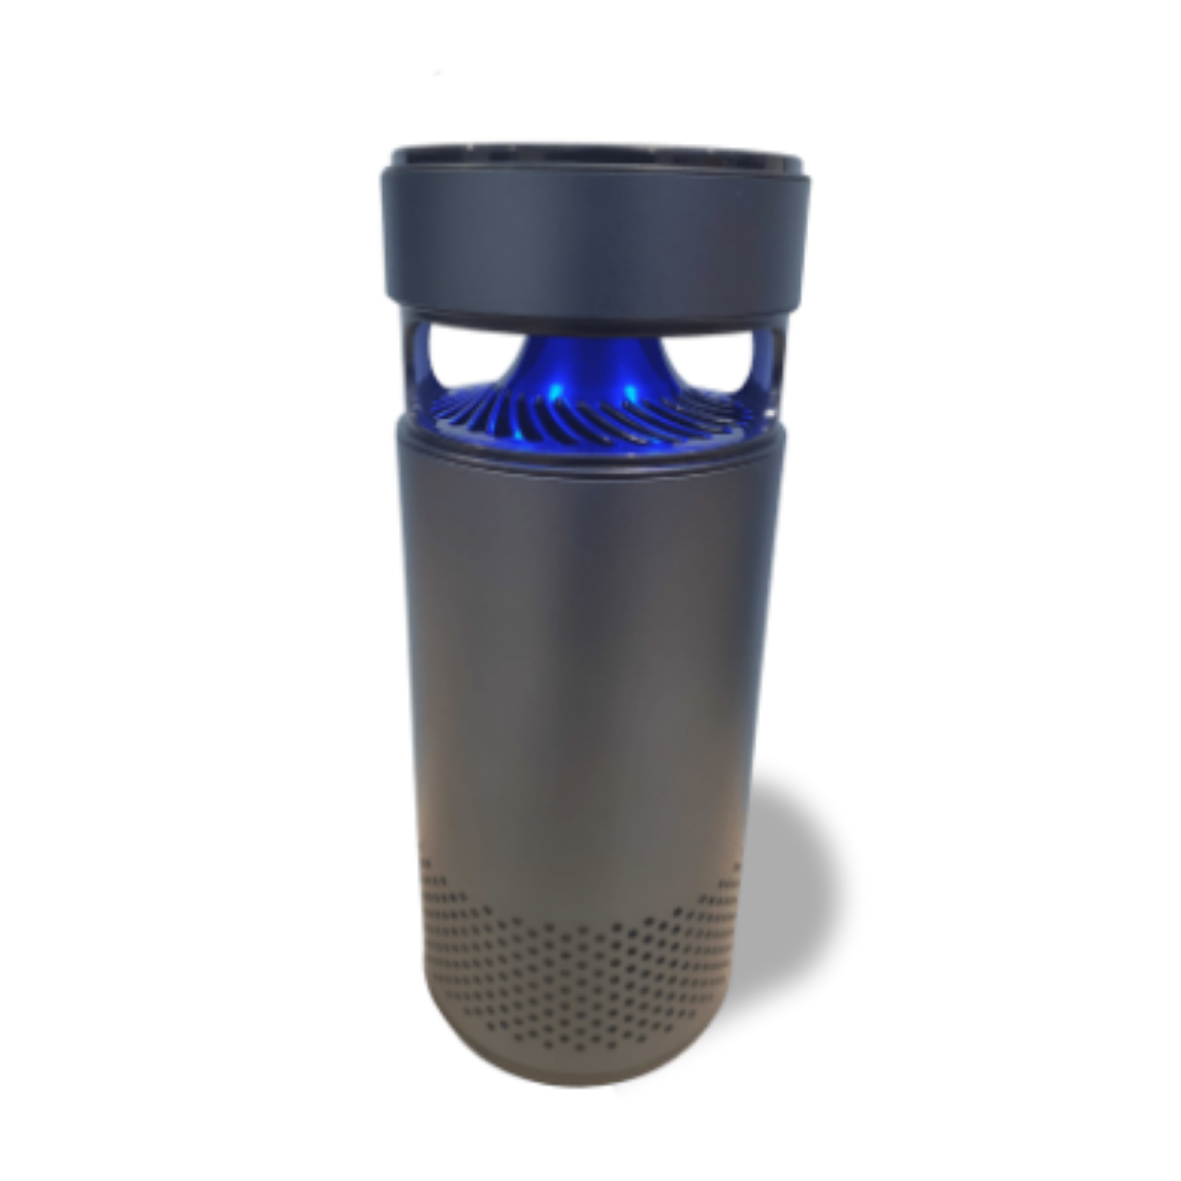 Portable UV-C Air Purifier